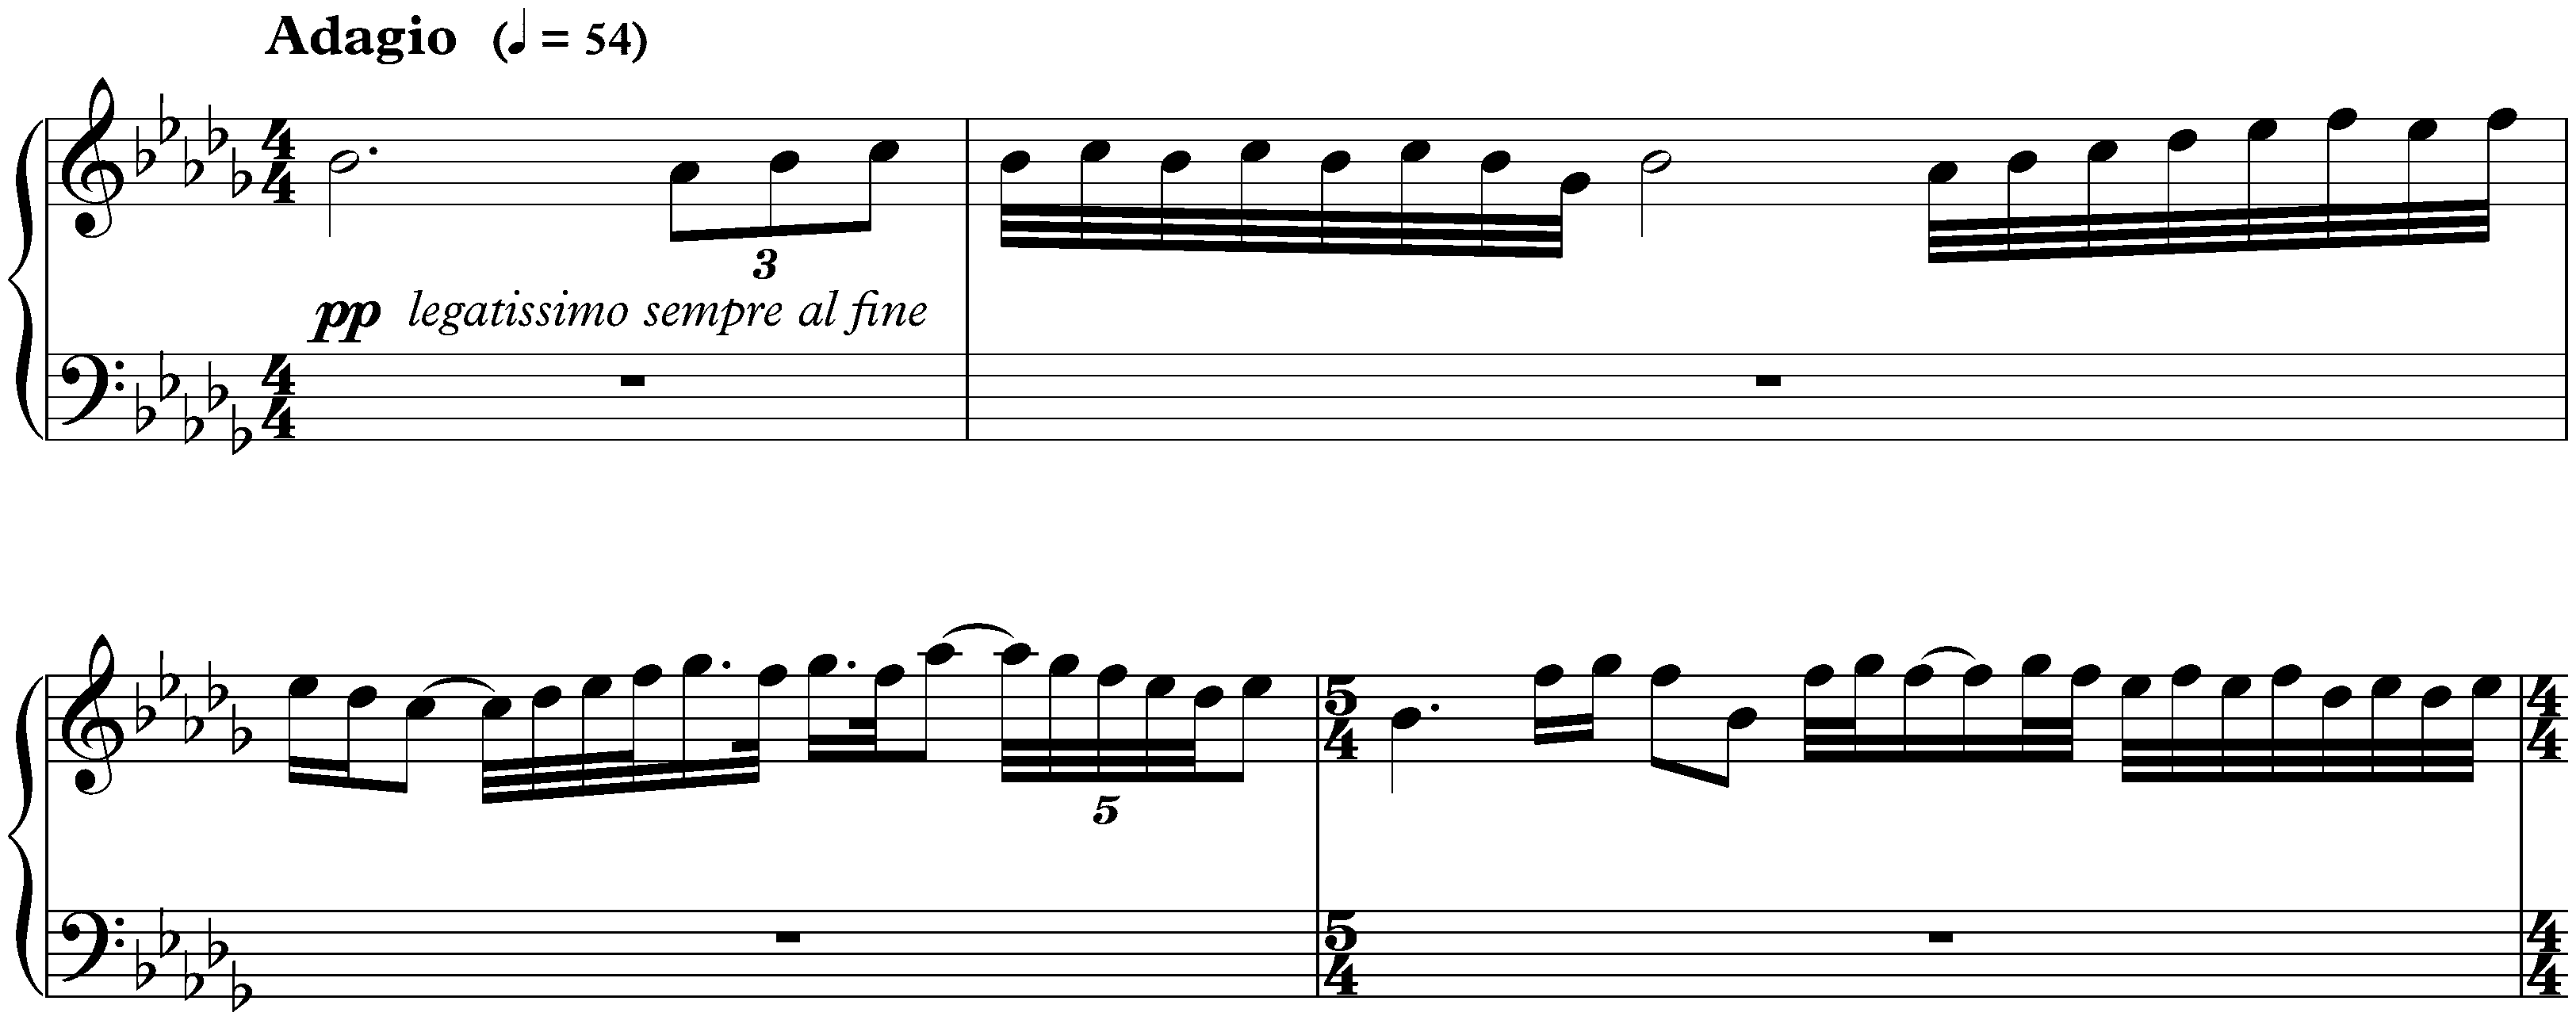 Twenty-four Preludes and Fugues, op. 87; 16. B-flat minor, Fugue